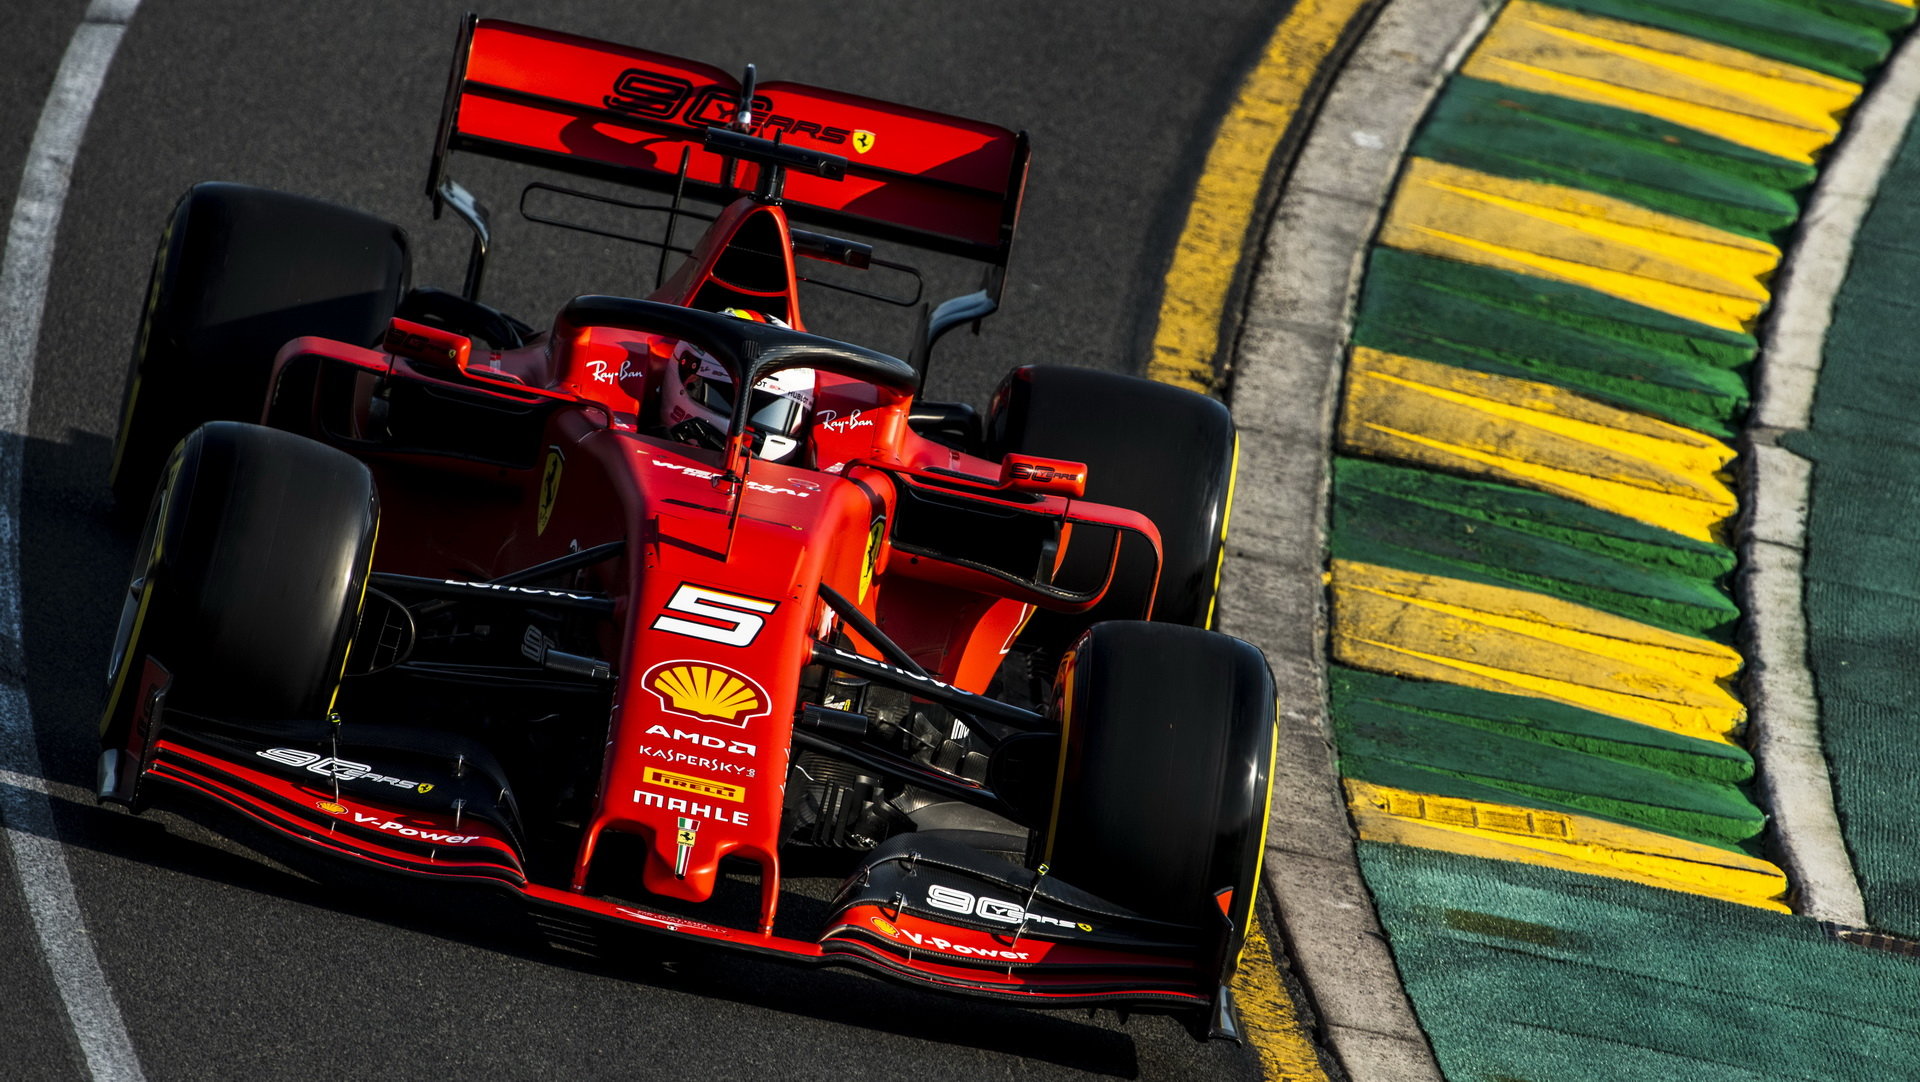 Sebastian Vettel v kvalifikaci v Melbourne